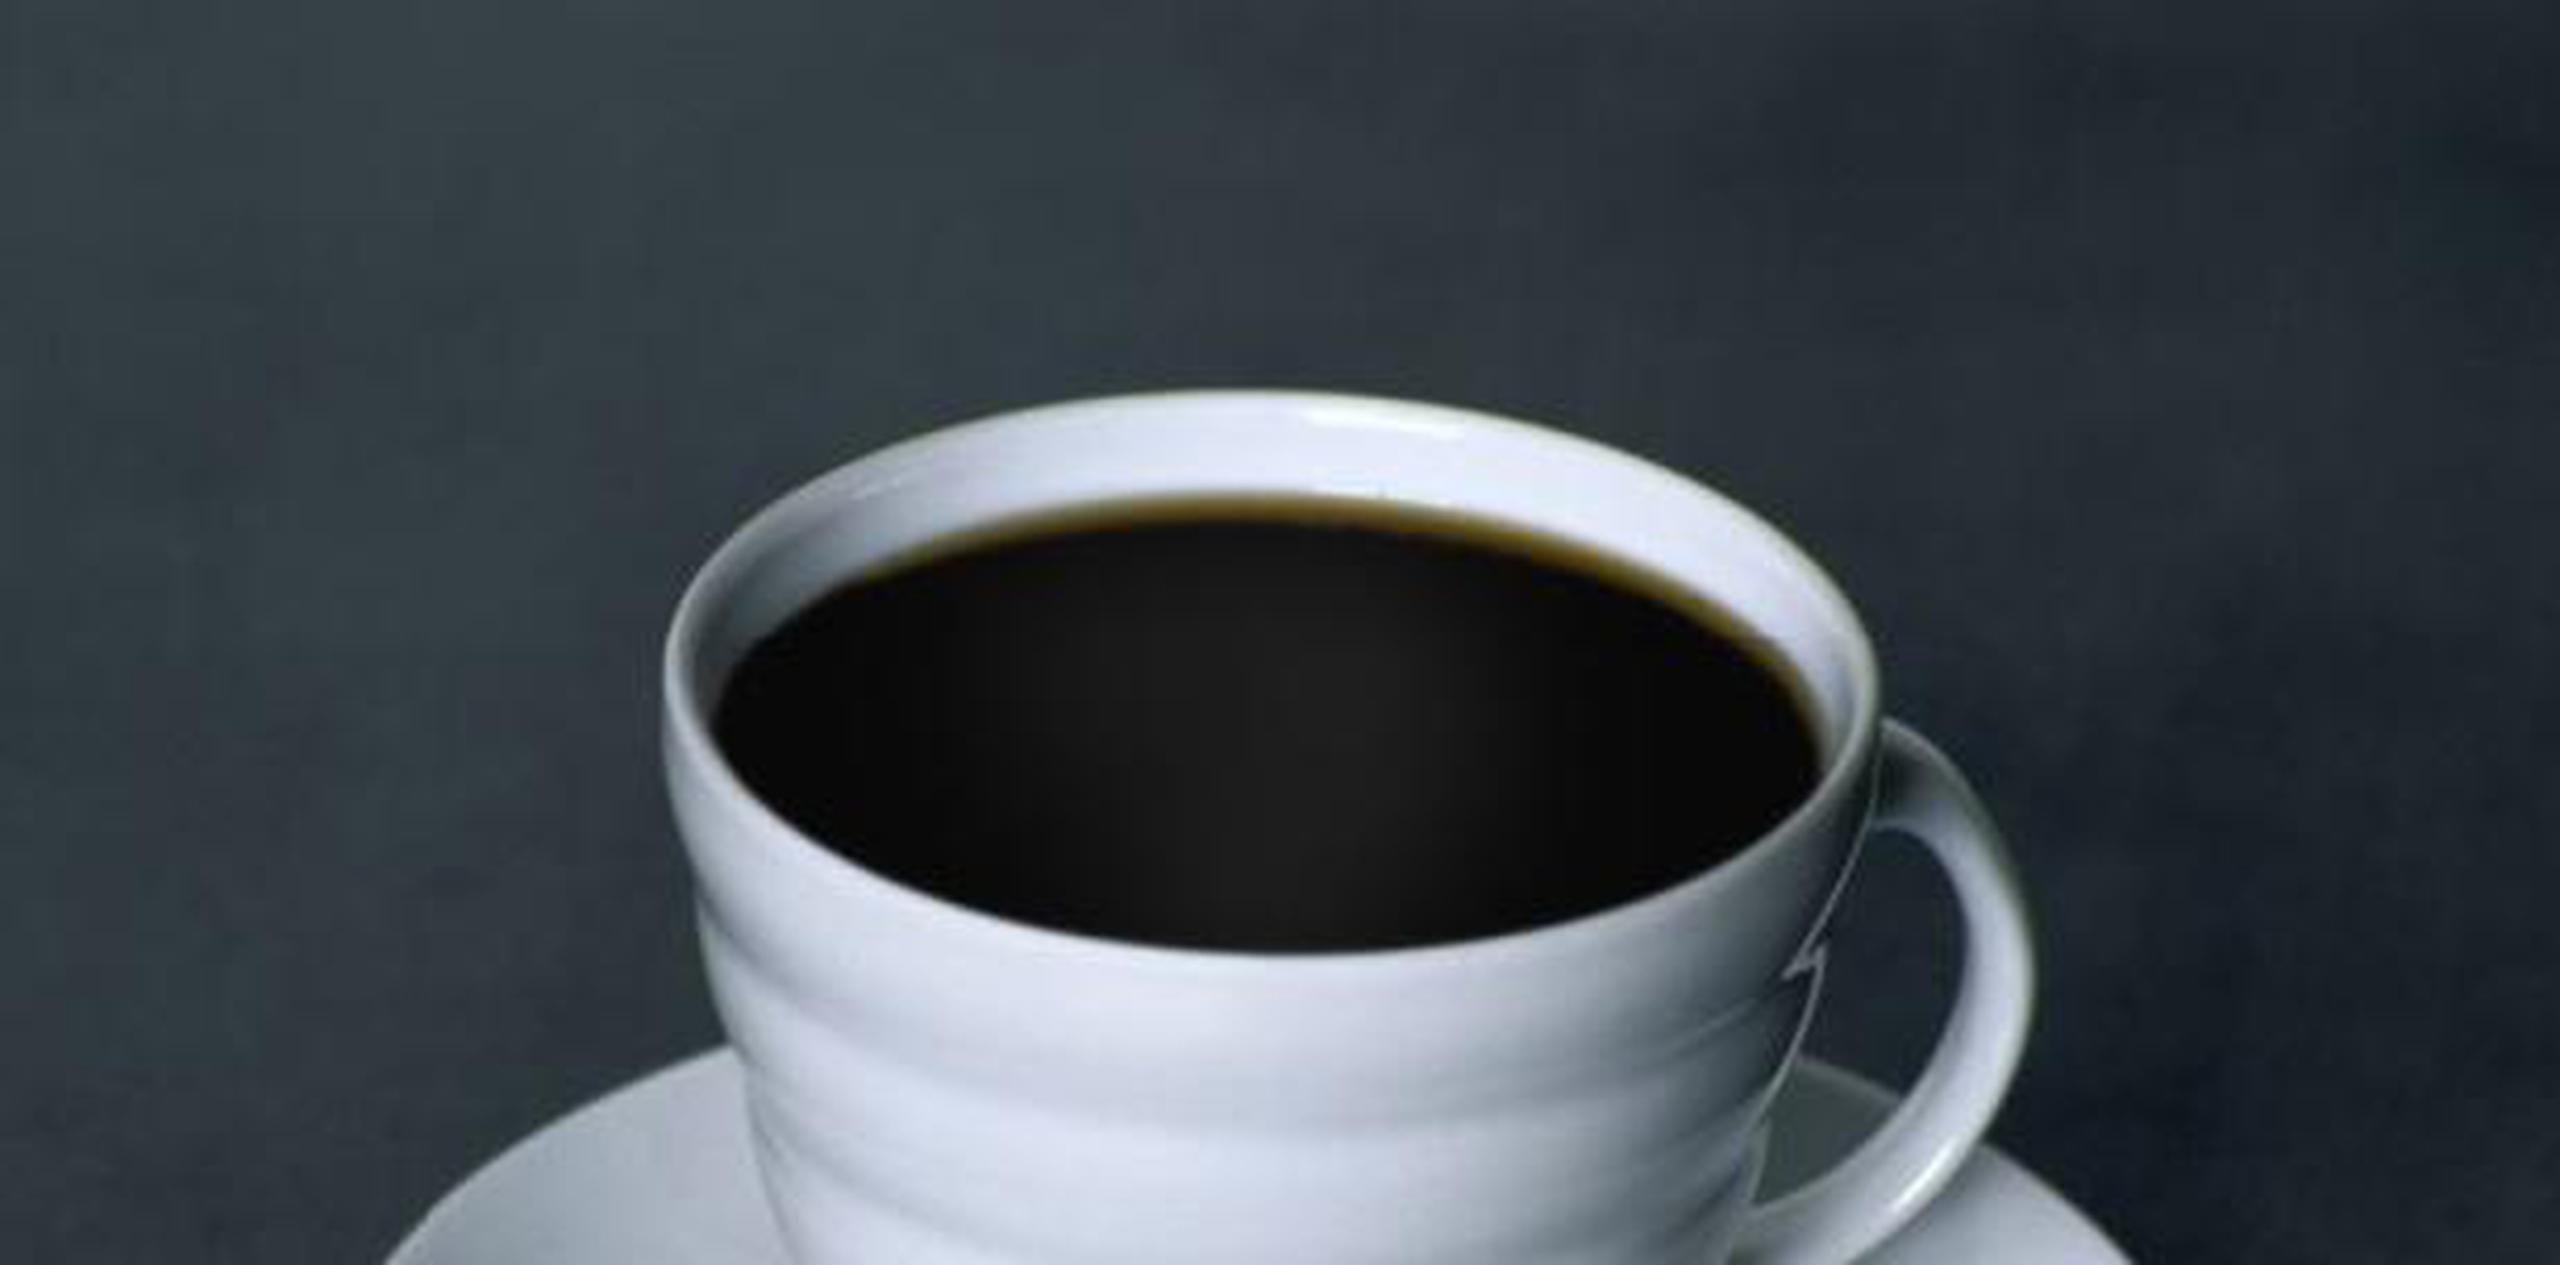 La directora del estudio Veronia Setiawan indicó, en un comunicado, que esa menor mortalidad se presenta "independientemente de que la gente beba café normal o descafeinado, lo que sugiere que esa asociación no está ligada a la cafeína". (Archivo)